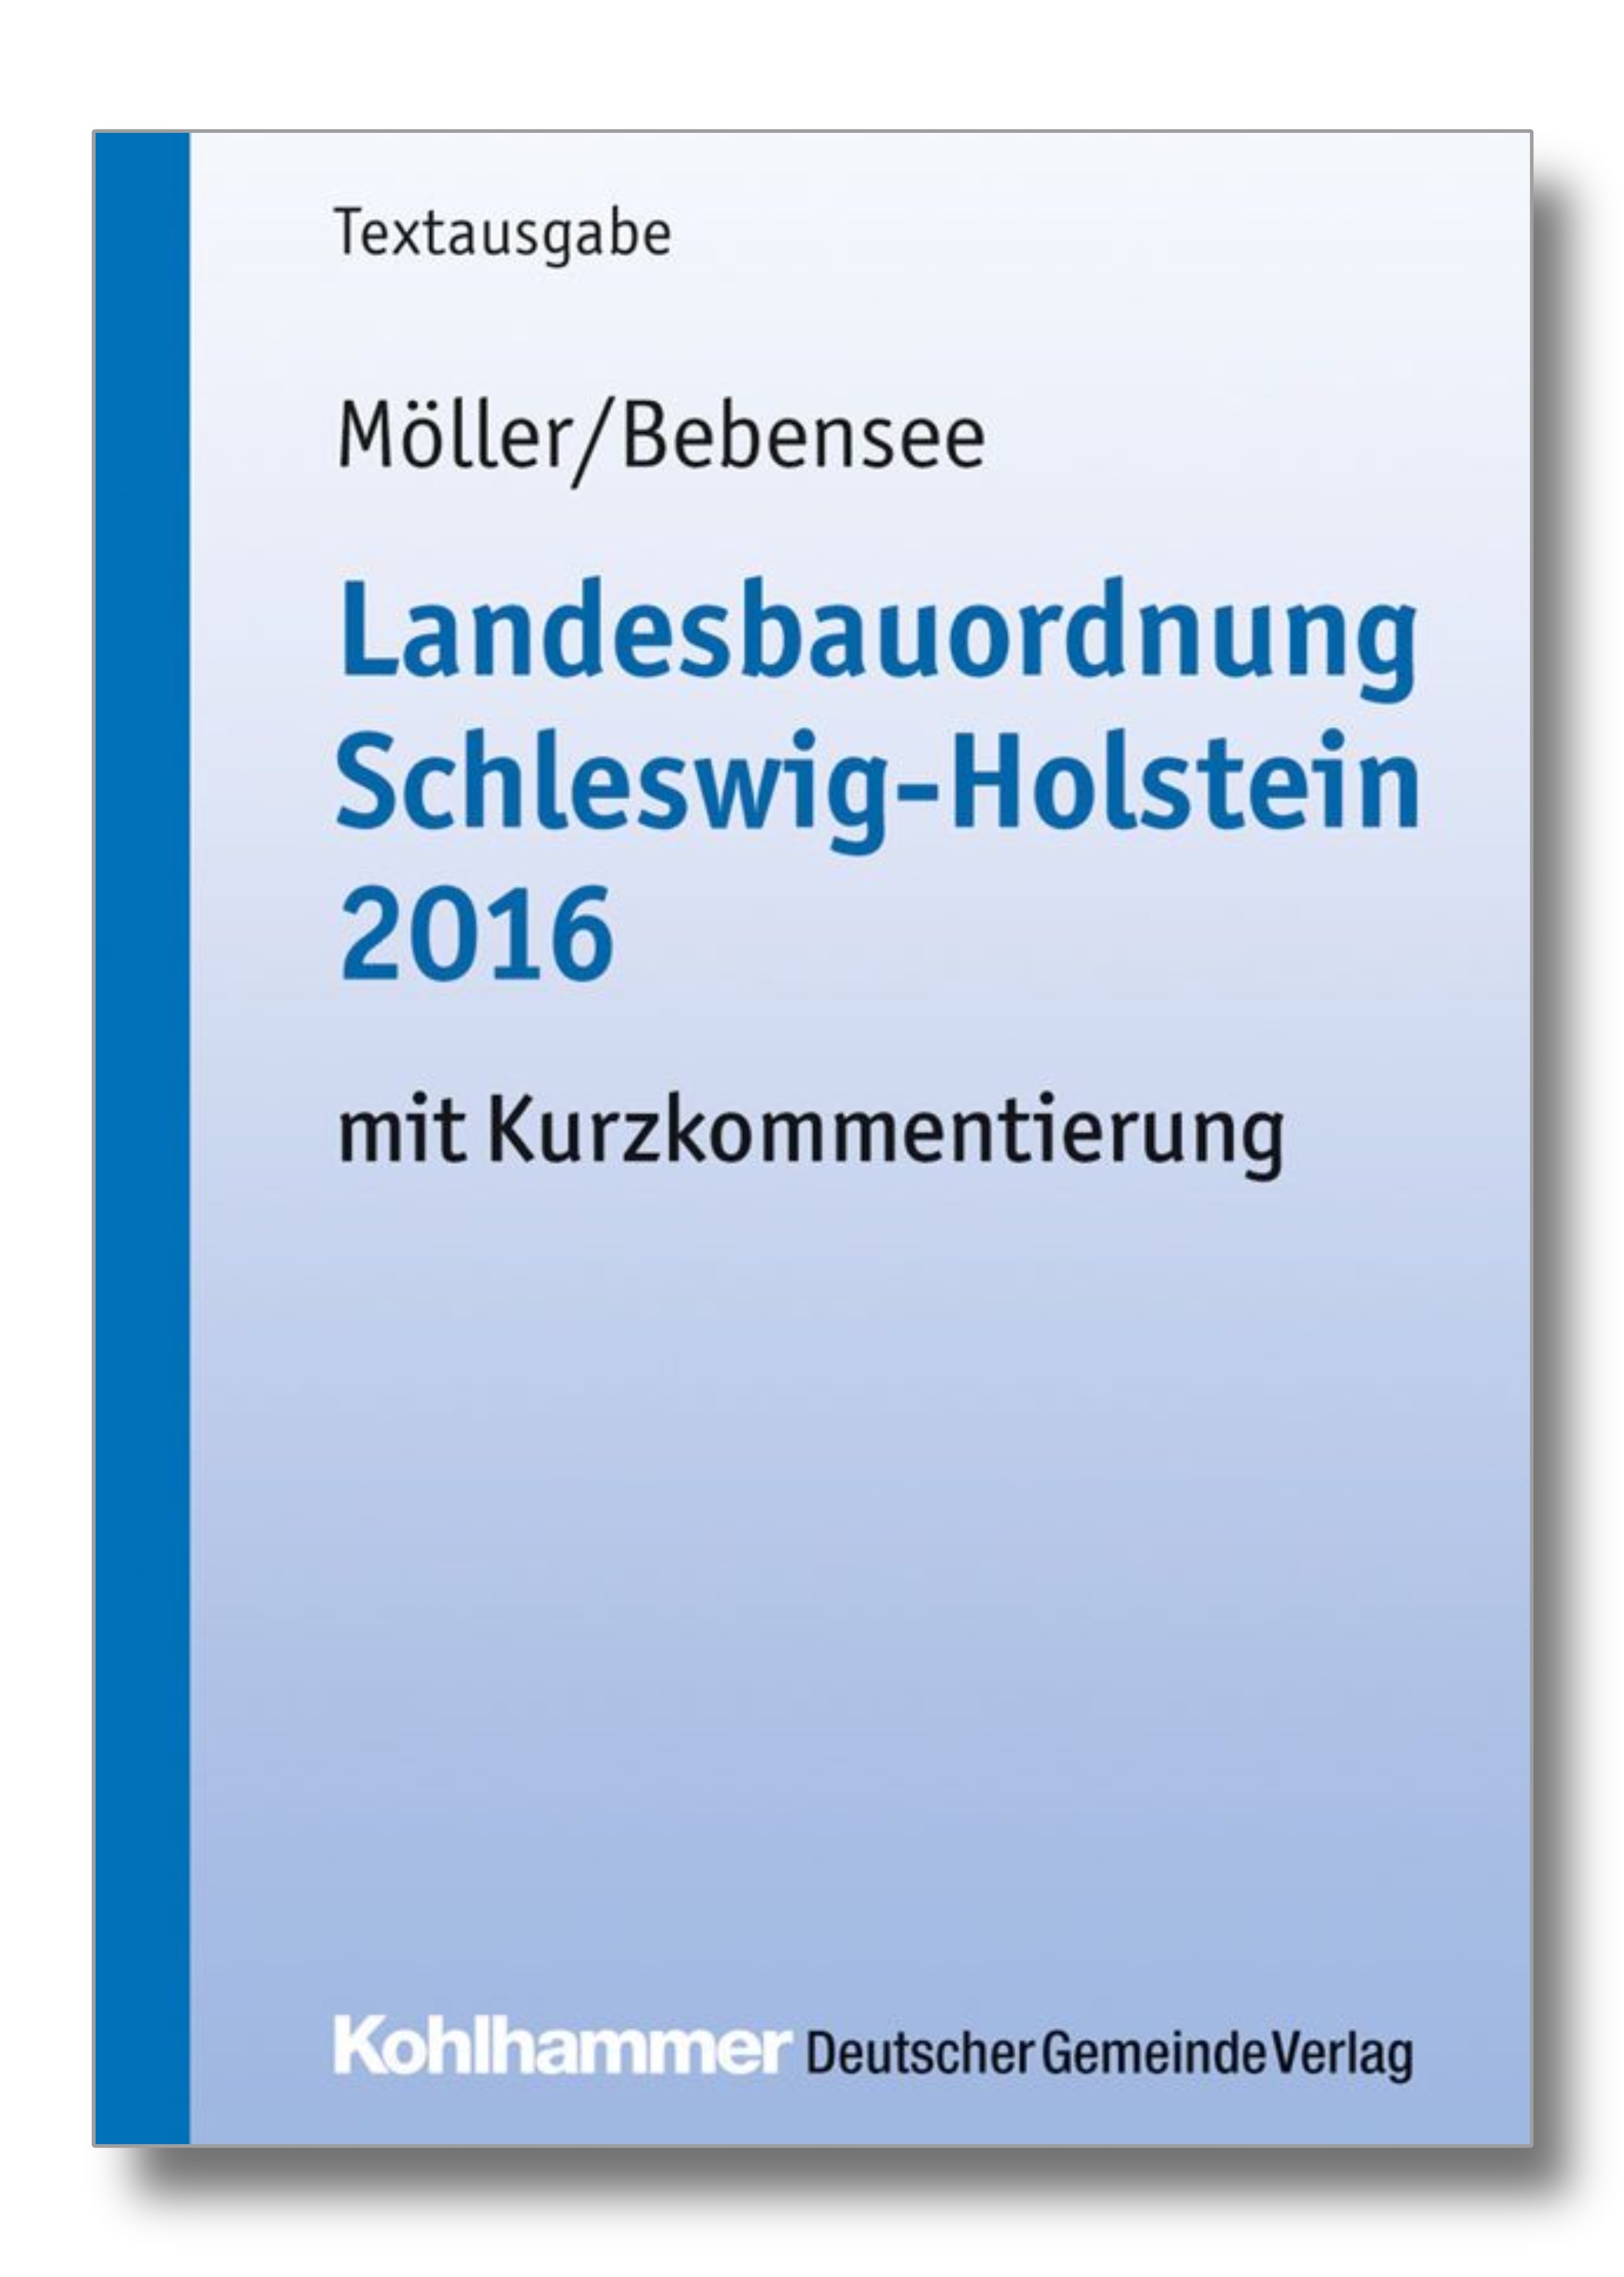 Landesbauordnung Schleswig-Holstein mit Kurzkommentierung